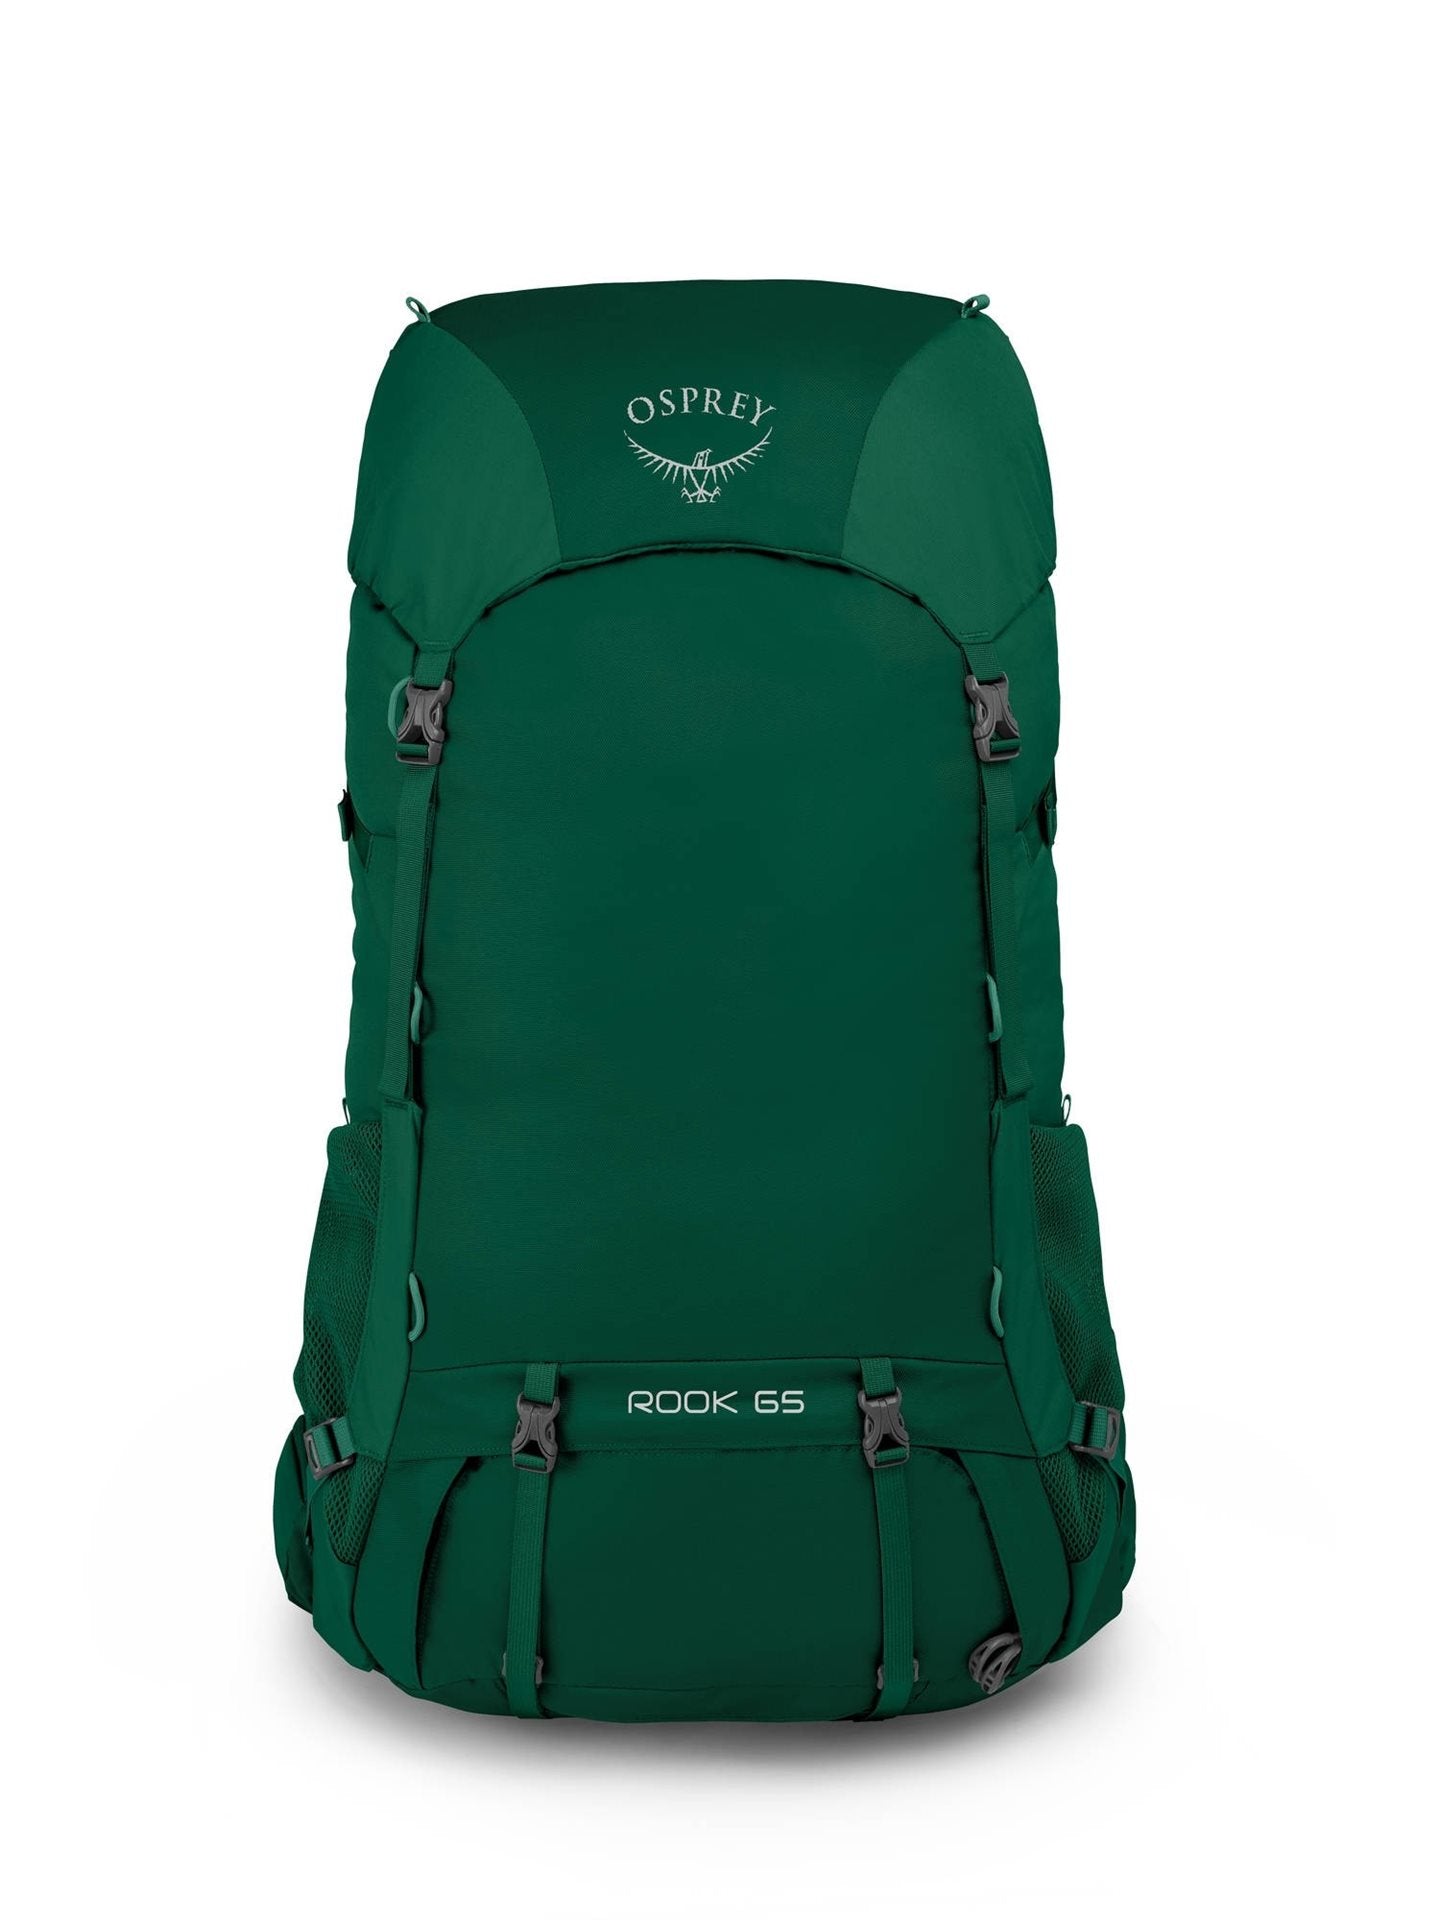 Osprey Rook 65 - Mallard Green Backpack - Reisartikelen-nl